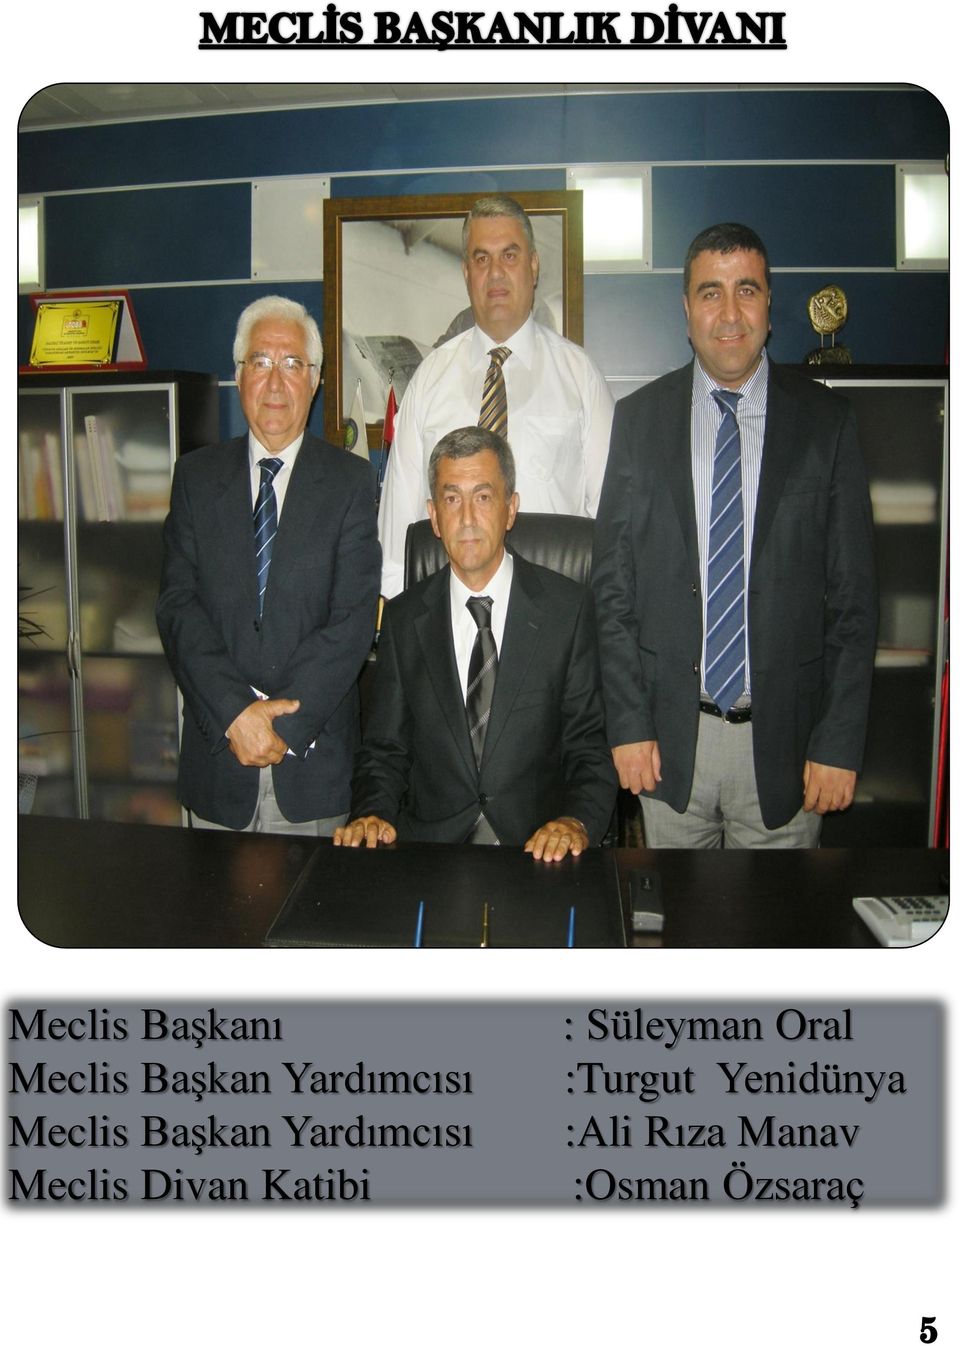 Meclis Divan Katibi : Süleyman Oral